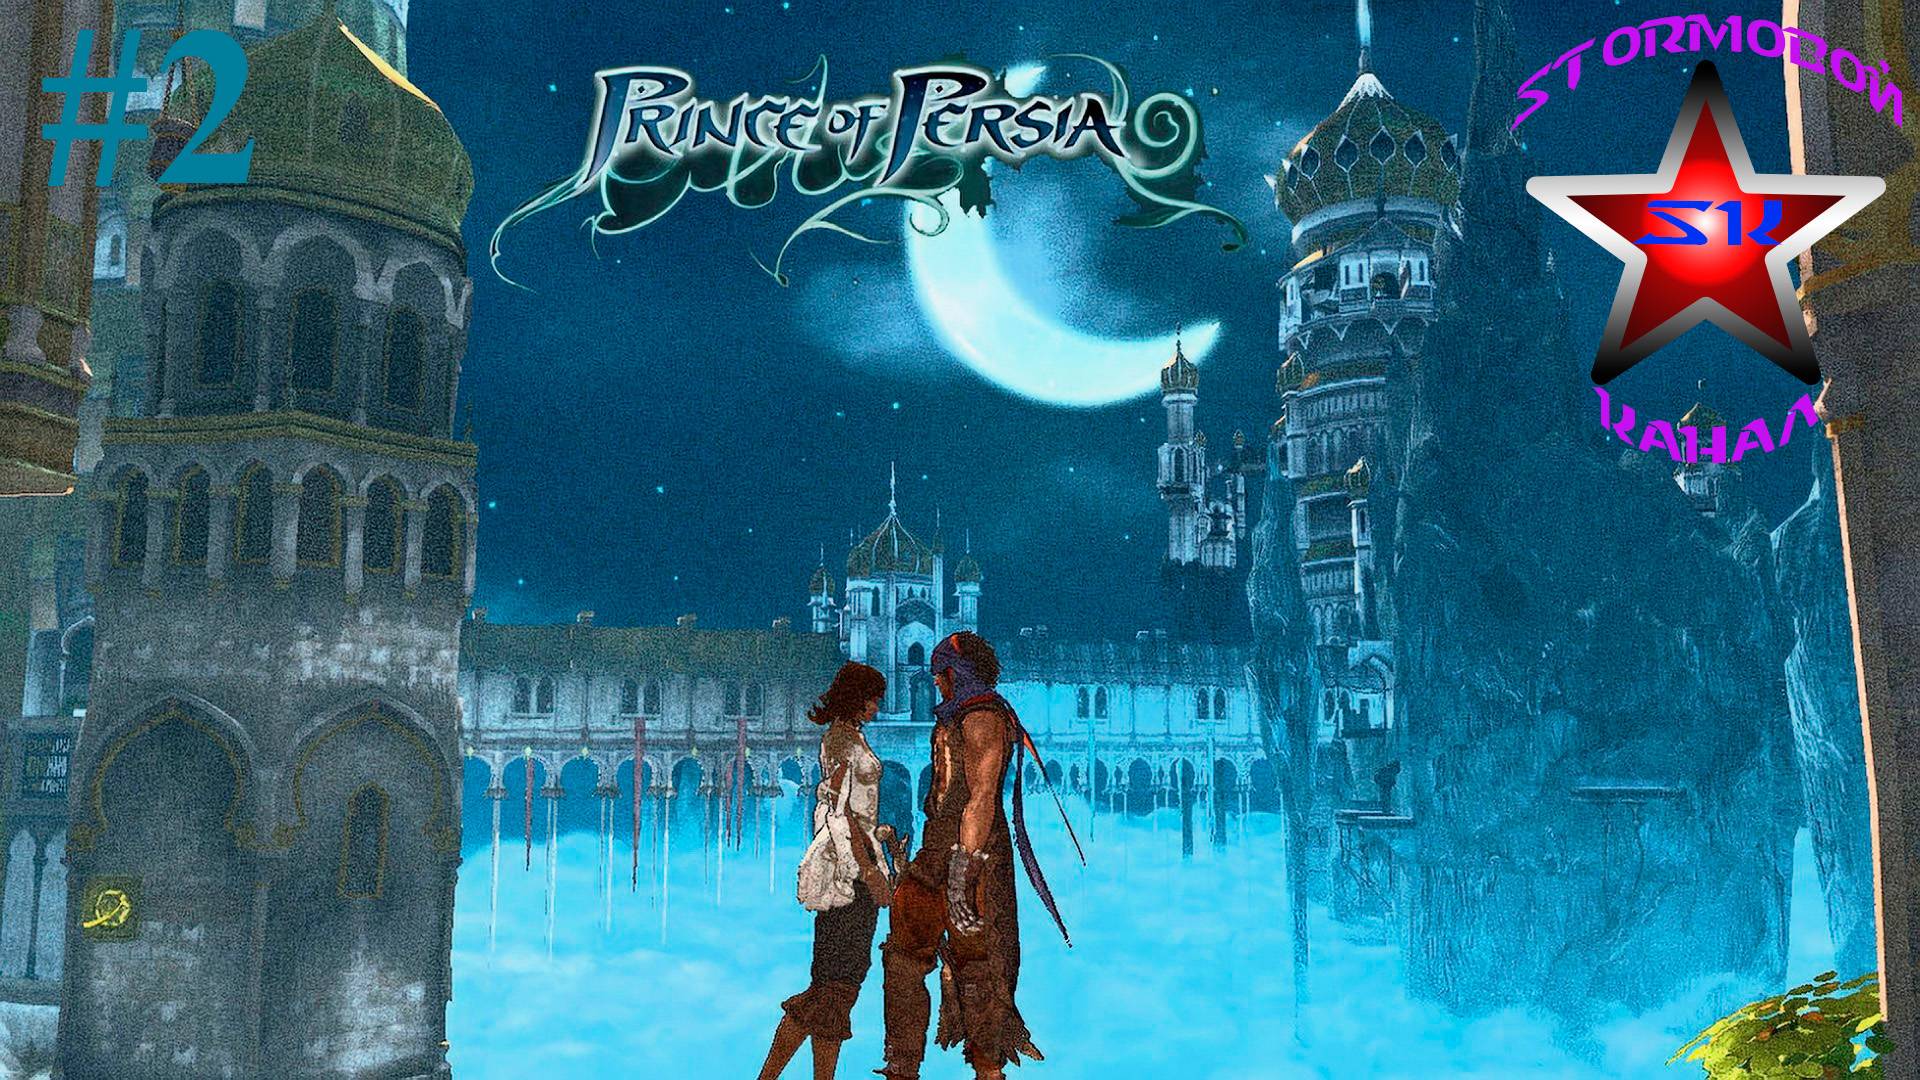 "ВСПОМИНАЯ КЛАССИКУ" Prince of Persia 2008 Прохождение на Русском Часть#2 | Walkthrough | Стрим